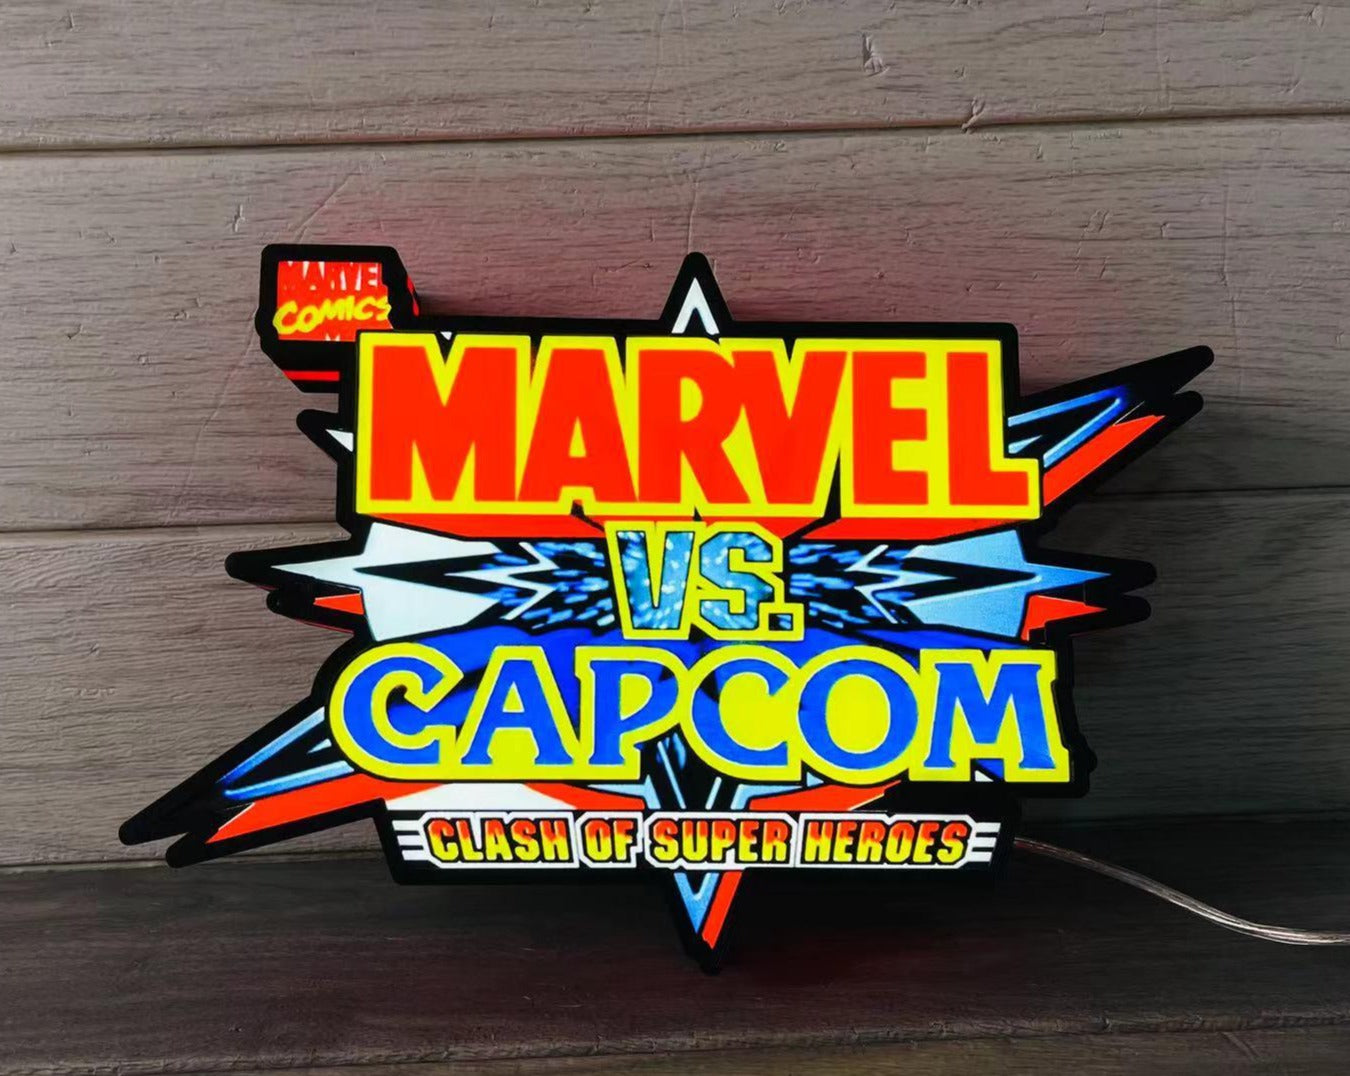 Marvel V Capcom LED Lightbox, Capcom vs Super Heros Game, Perfect for Arcade Room, Mancave - FYLZGO Signs